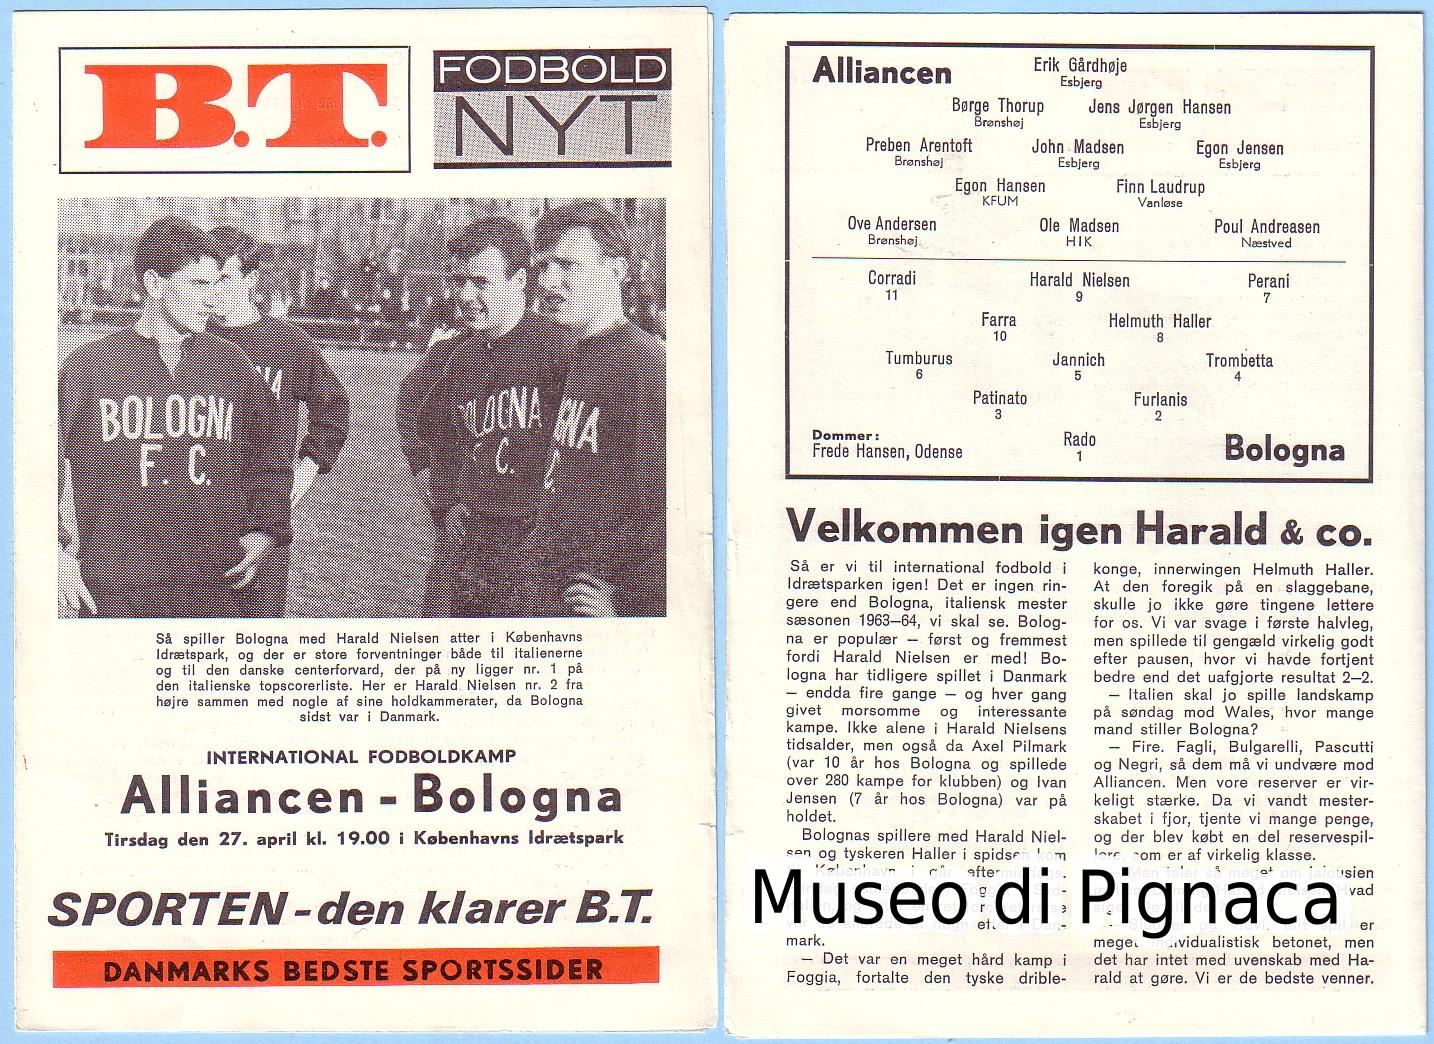 1965 (27 aprile) - Programma partita  Alliance - Bologna